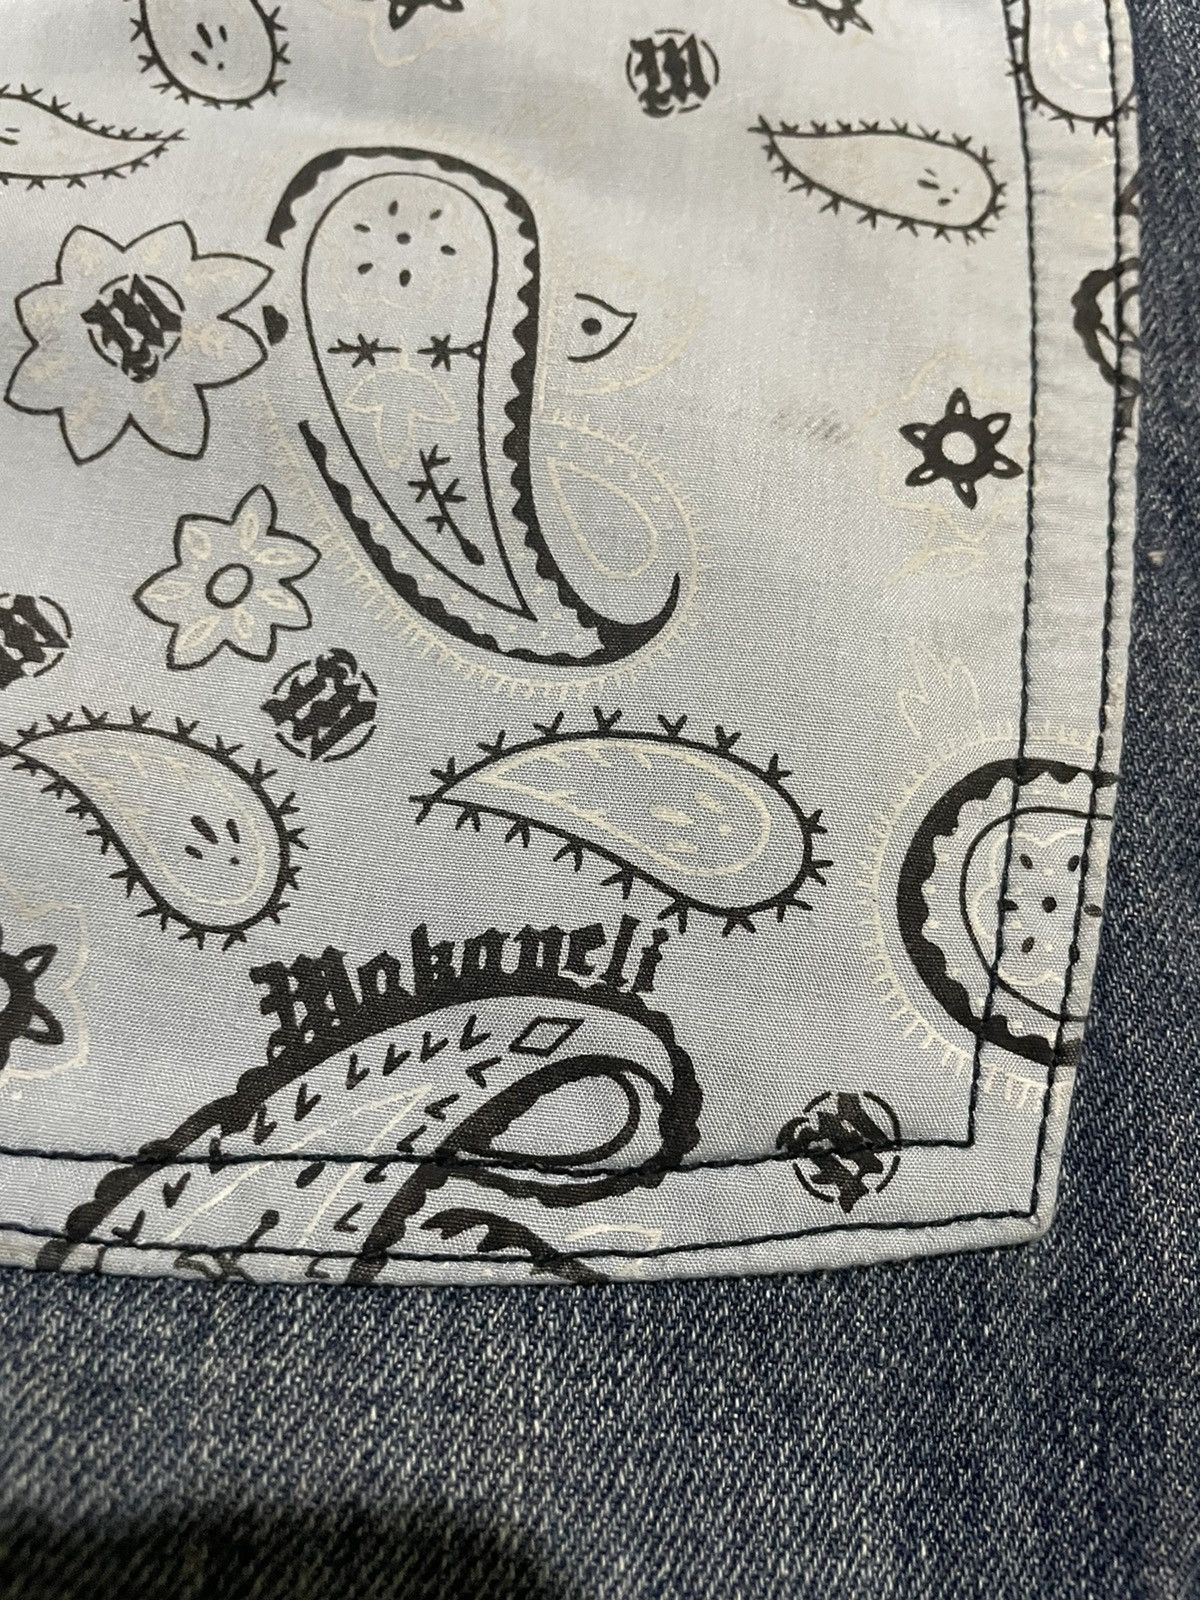 Vintage Vintage Tupac Makaveli Signature Bandana Paisley Baggy Jeans Size US 35 - 5 Thumbnail